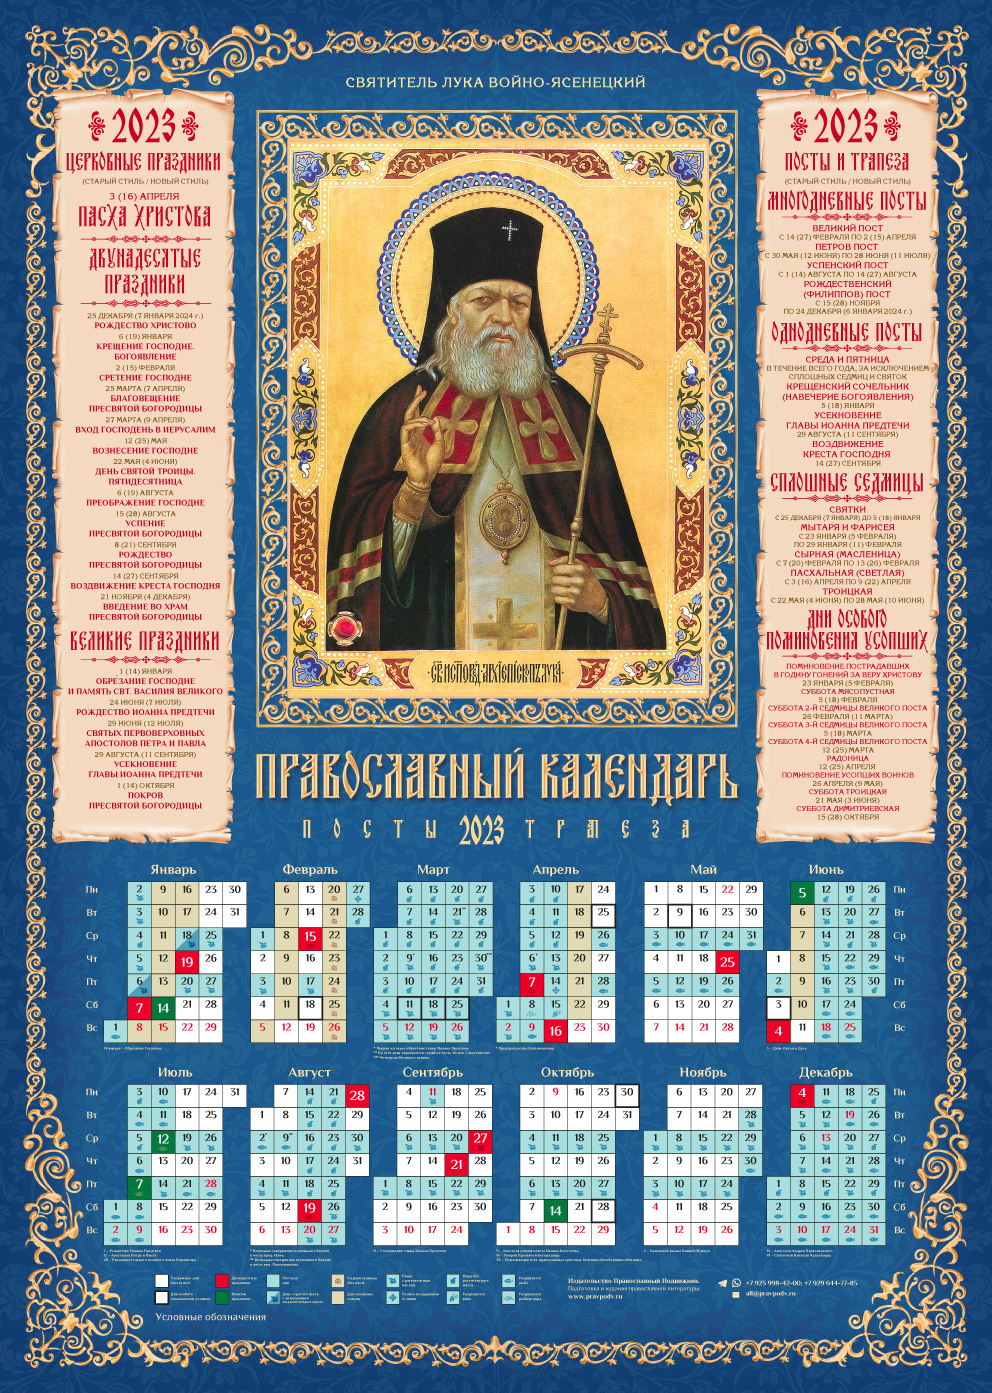 3 апреля православный календарь. Православный календарь на 2023 год. Православные календарики 2023 года. Календарь на 2023 годпровославный. Православный листовой календарь 2023.